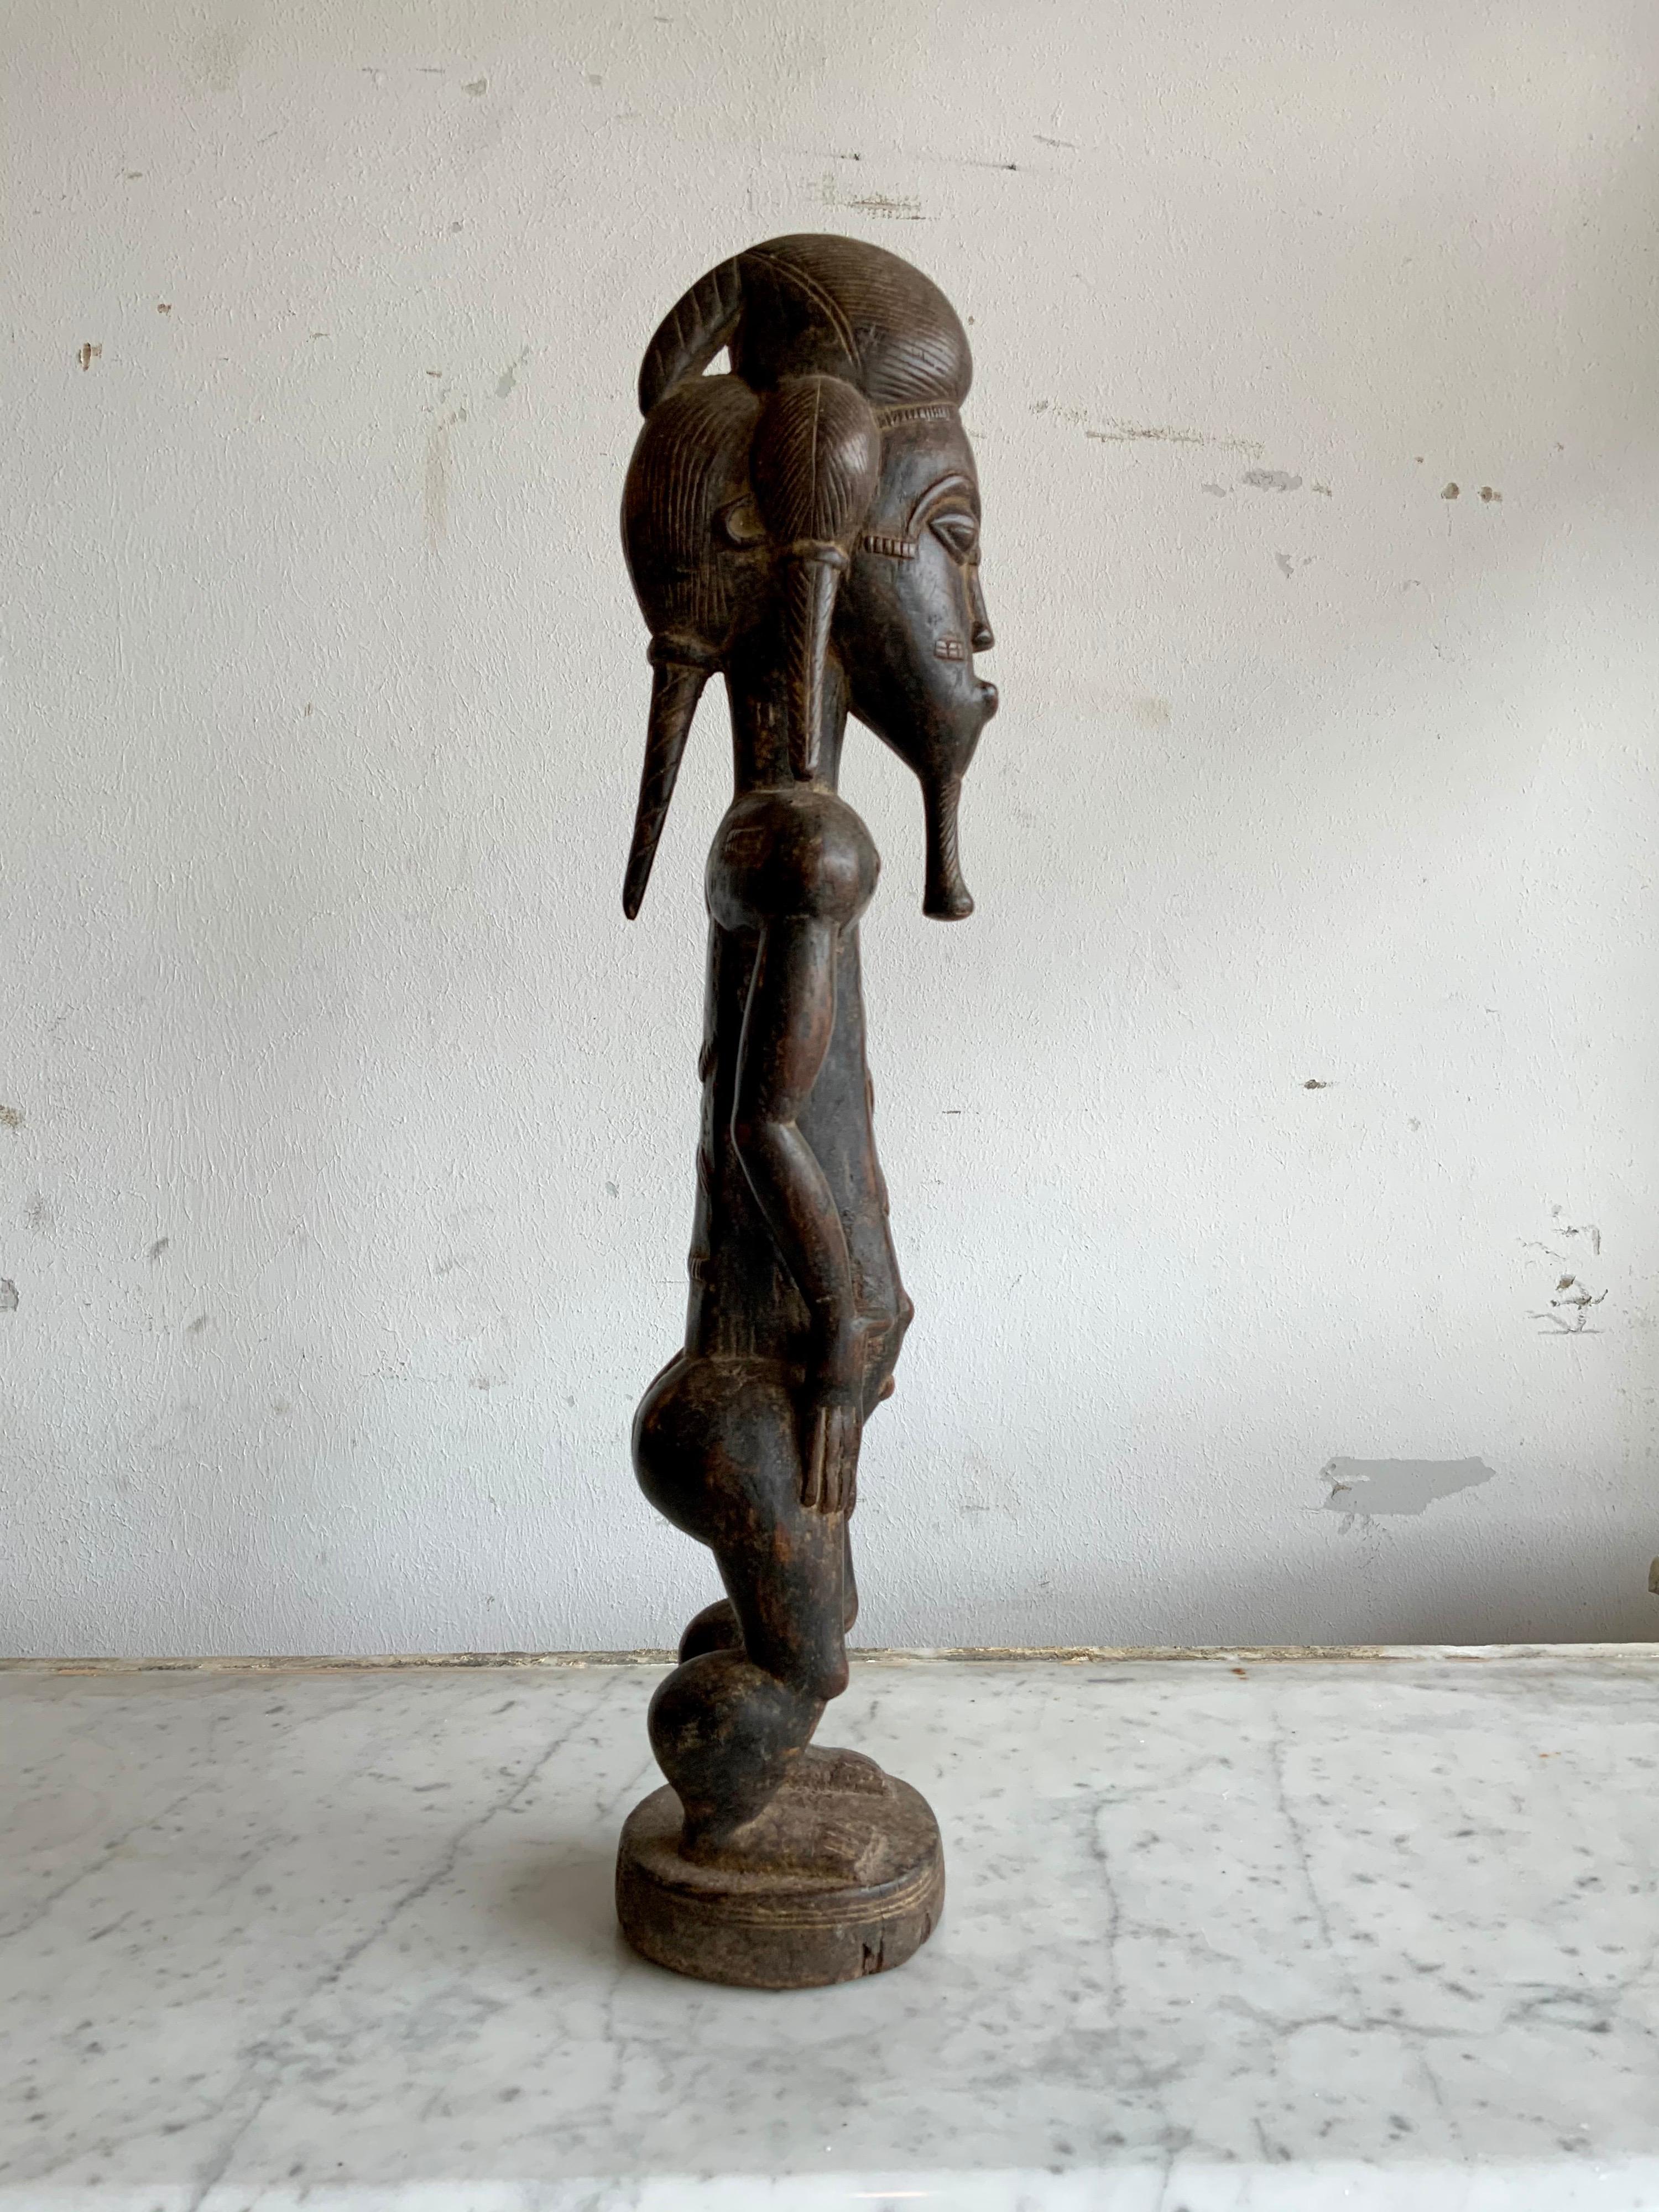 Cette statuette provient du Bénin en Afrique, vers 1900.

De beaux petits détails.